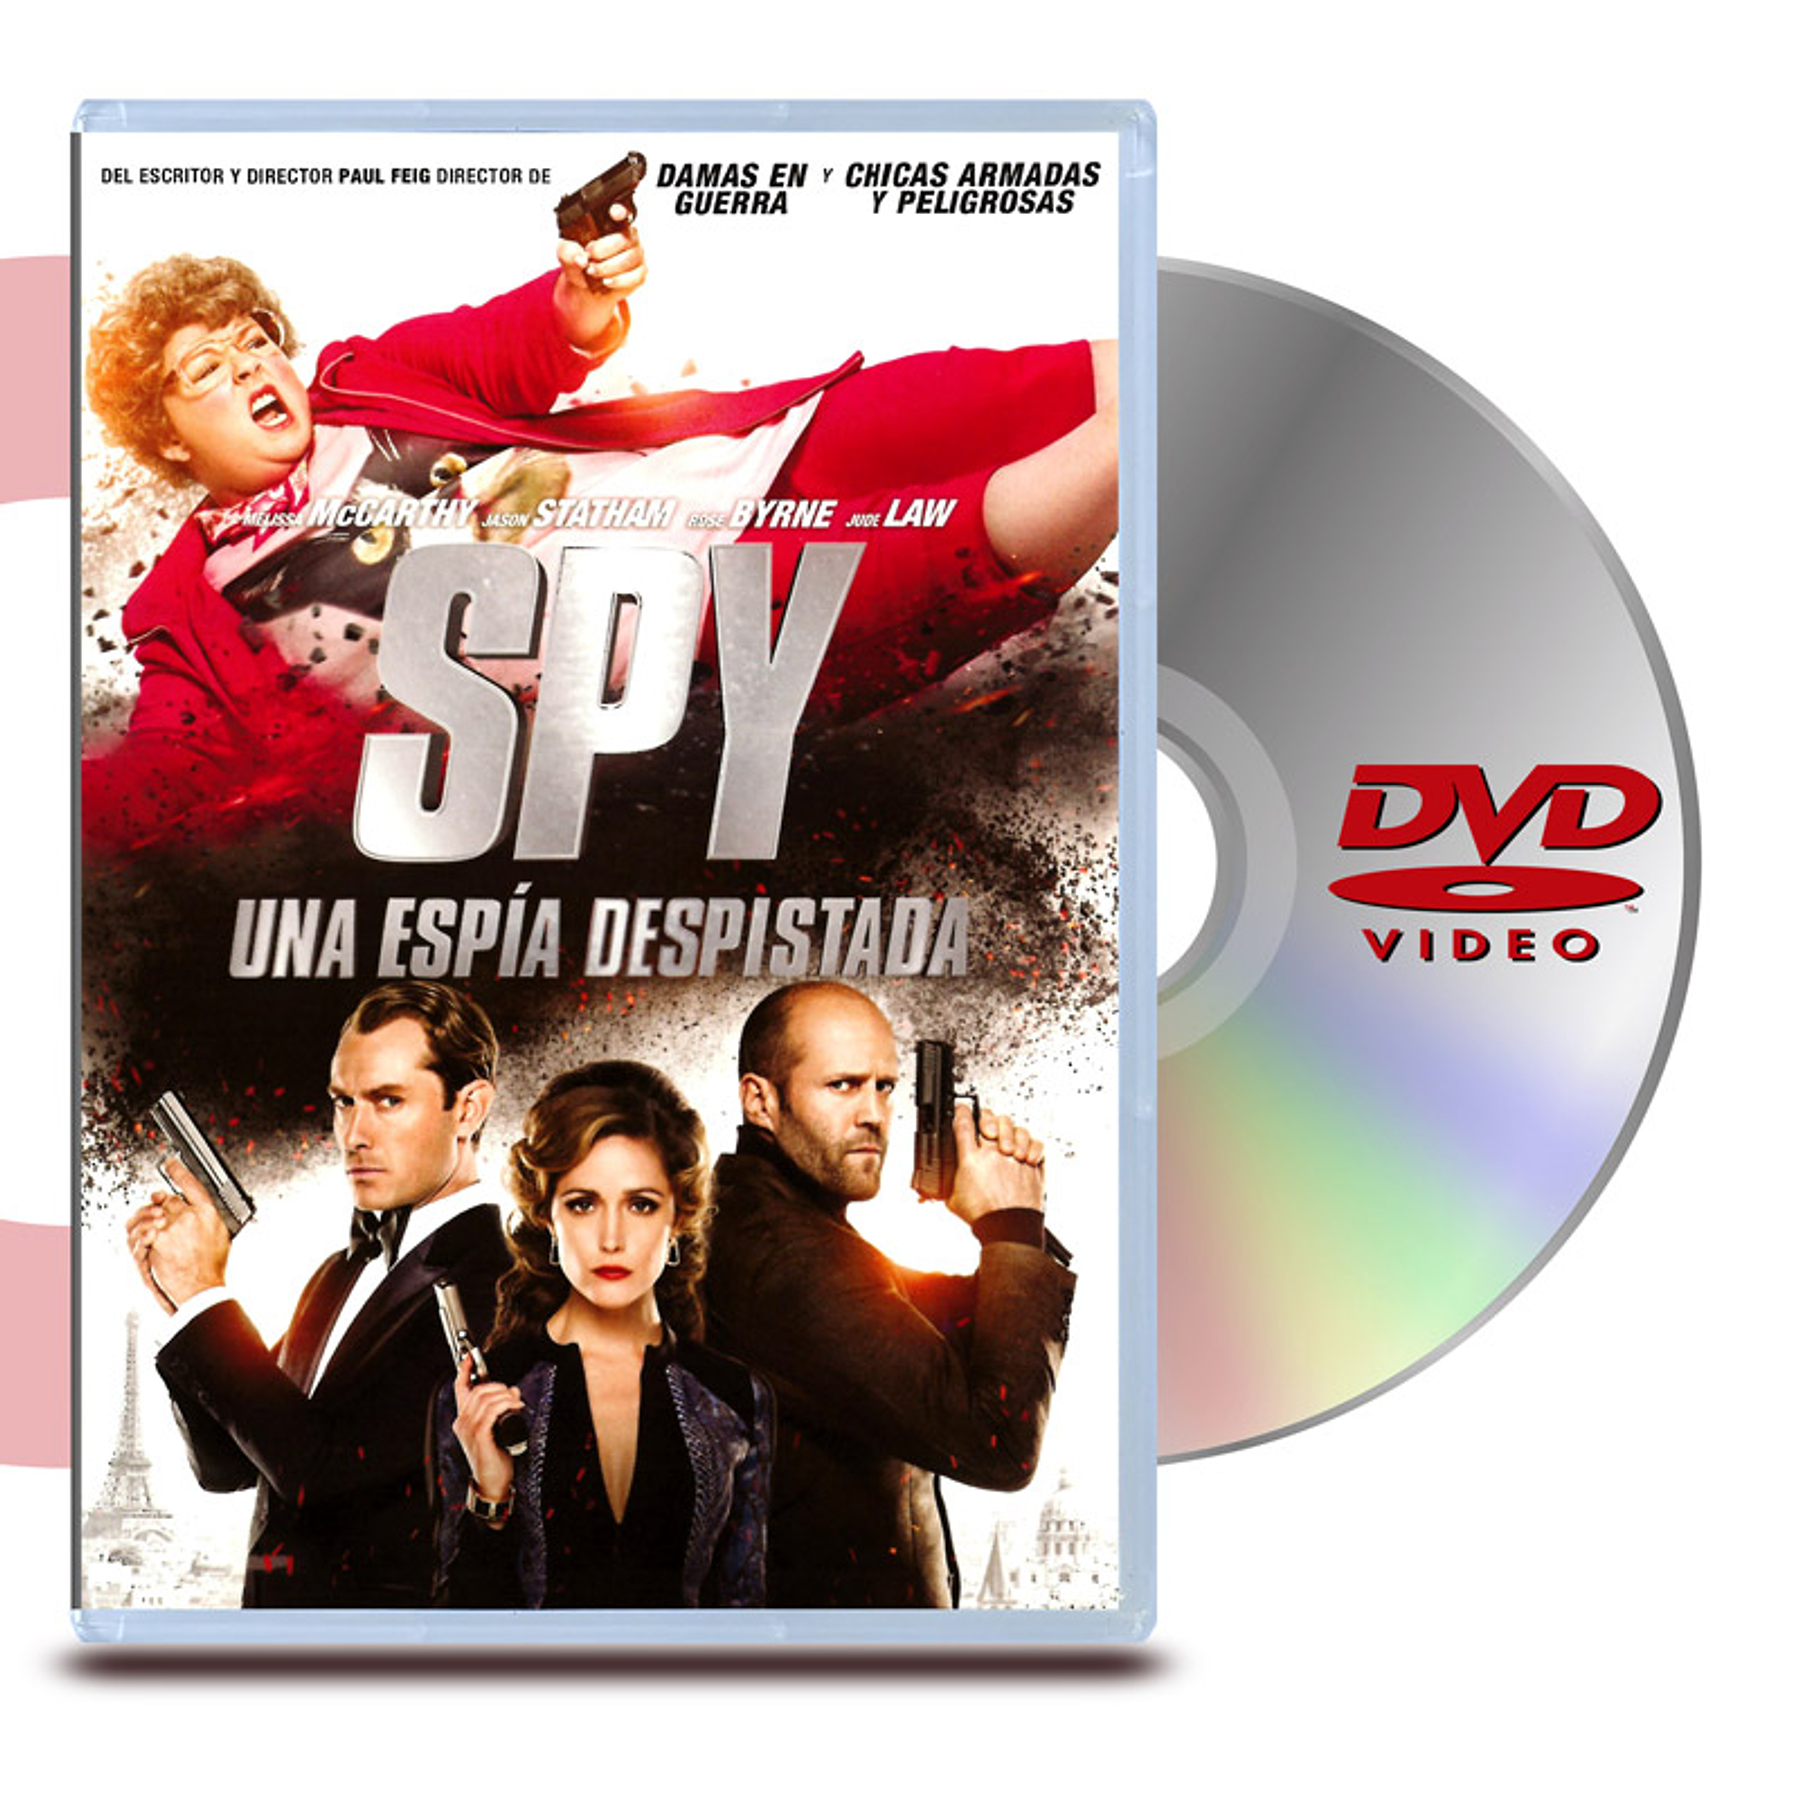 DVD SPY: UNA ESPÍA DESPISTADA